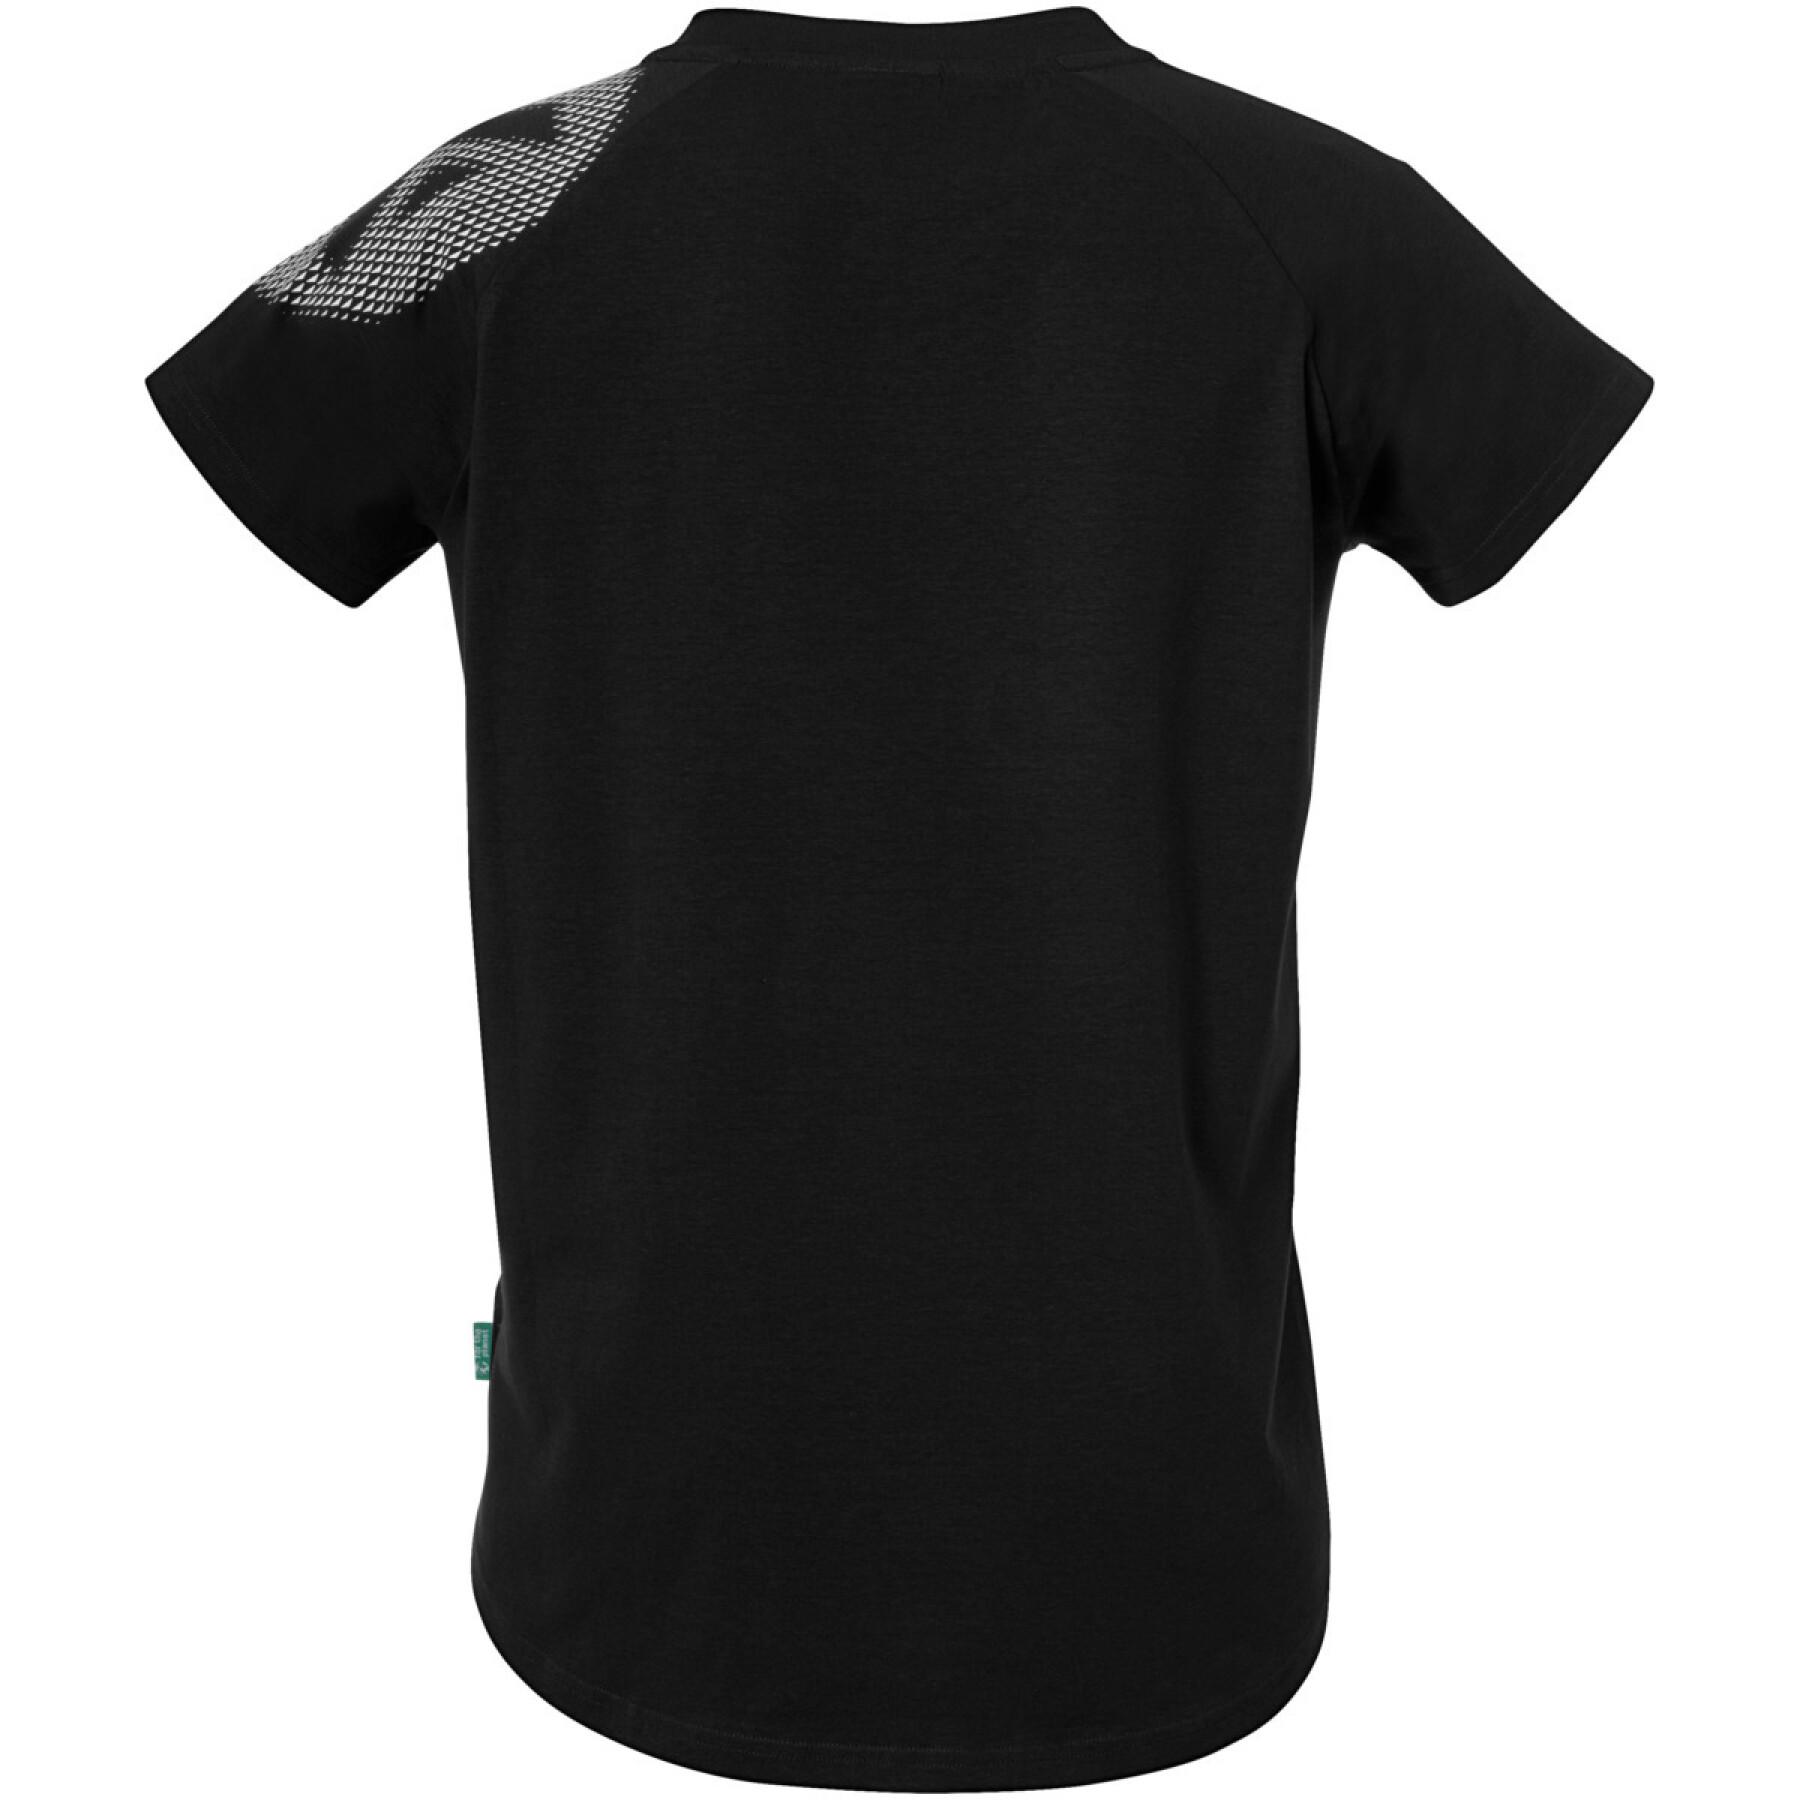 Dames-T-shirt Kempa Core 26